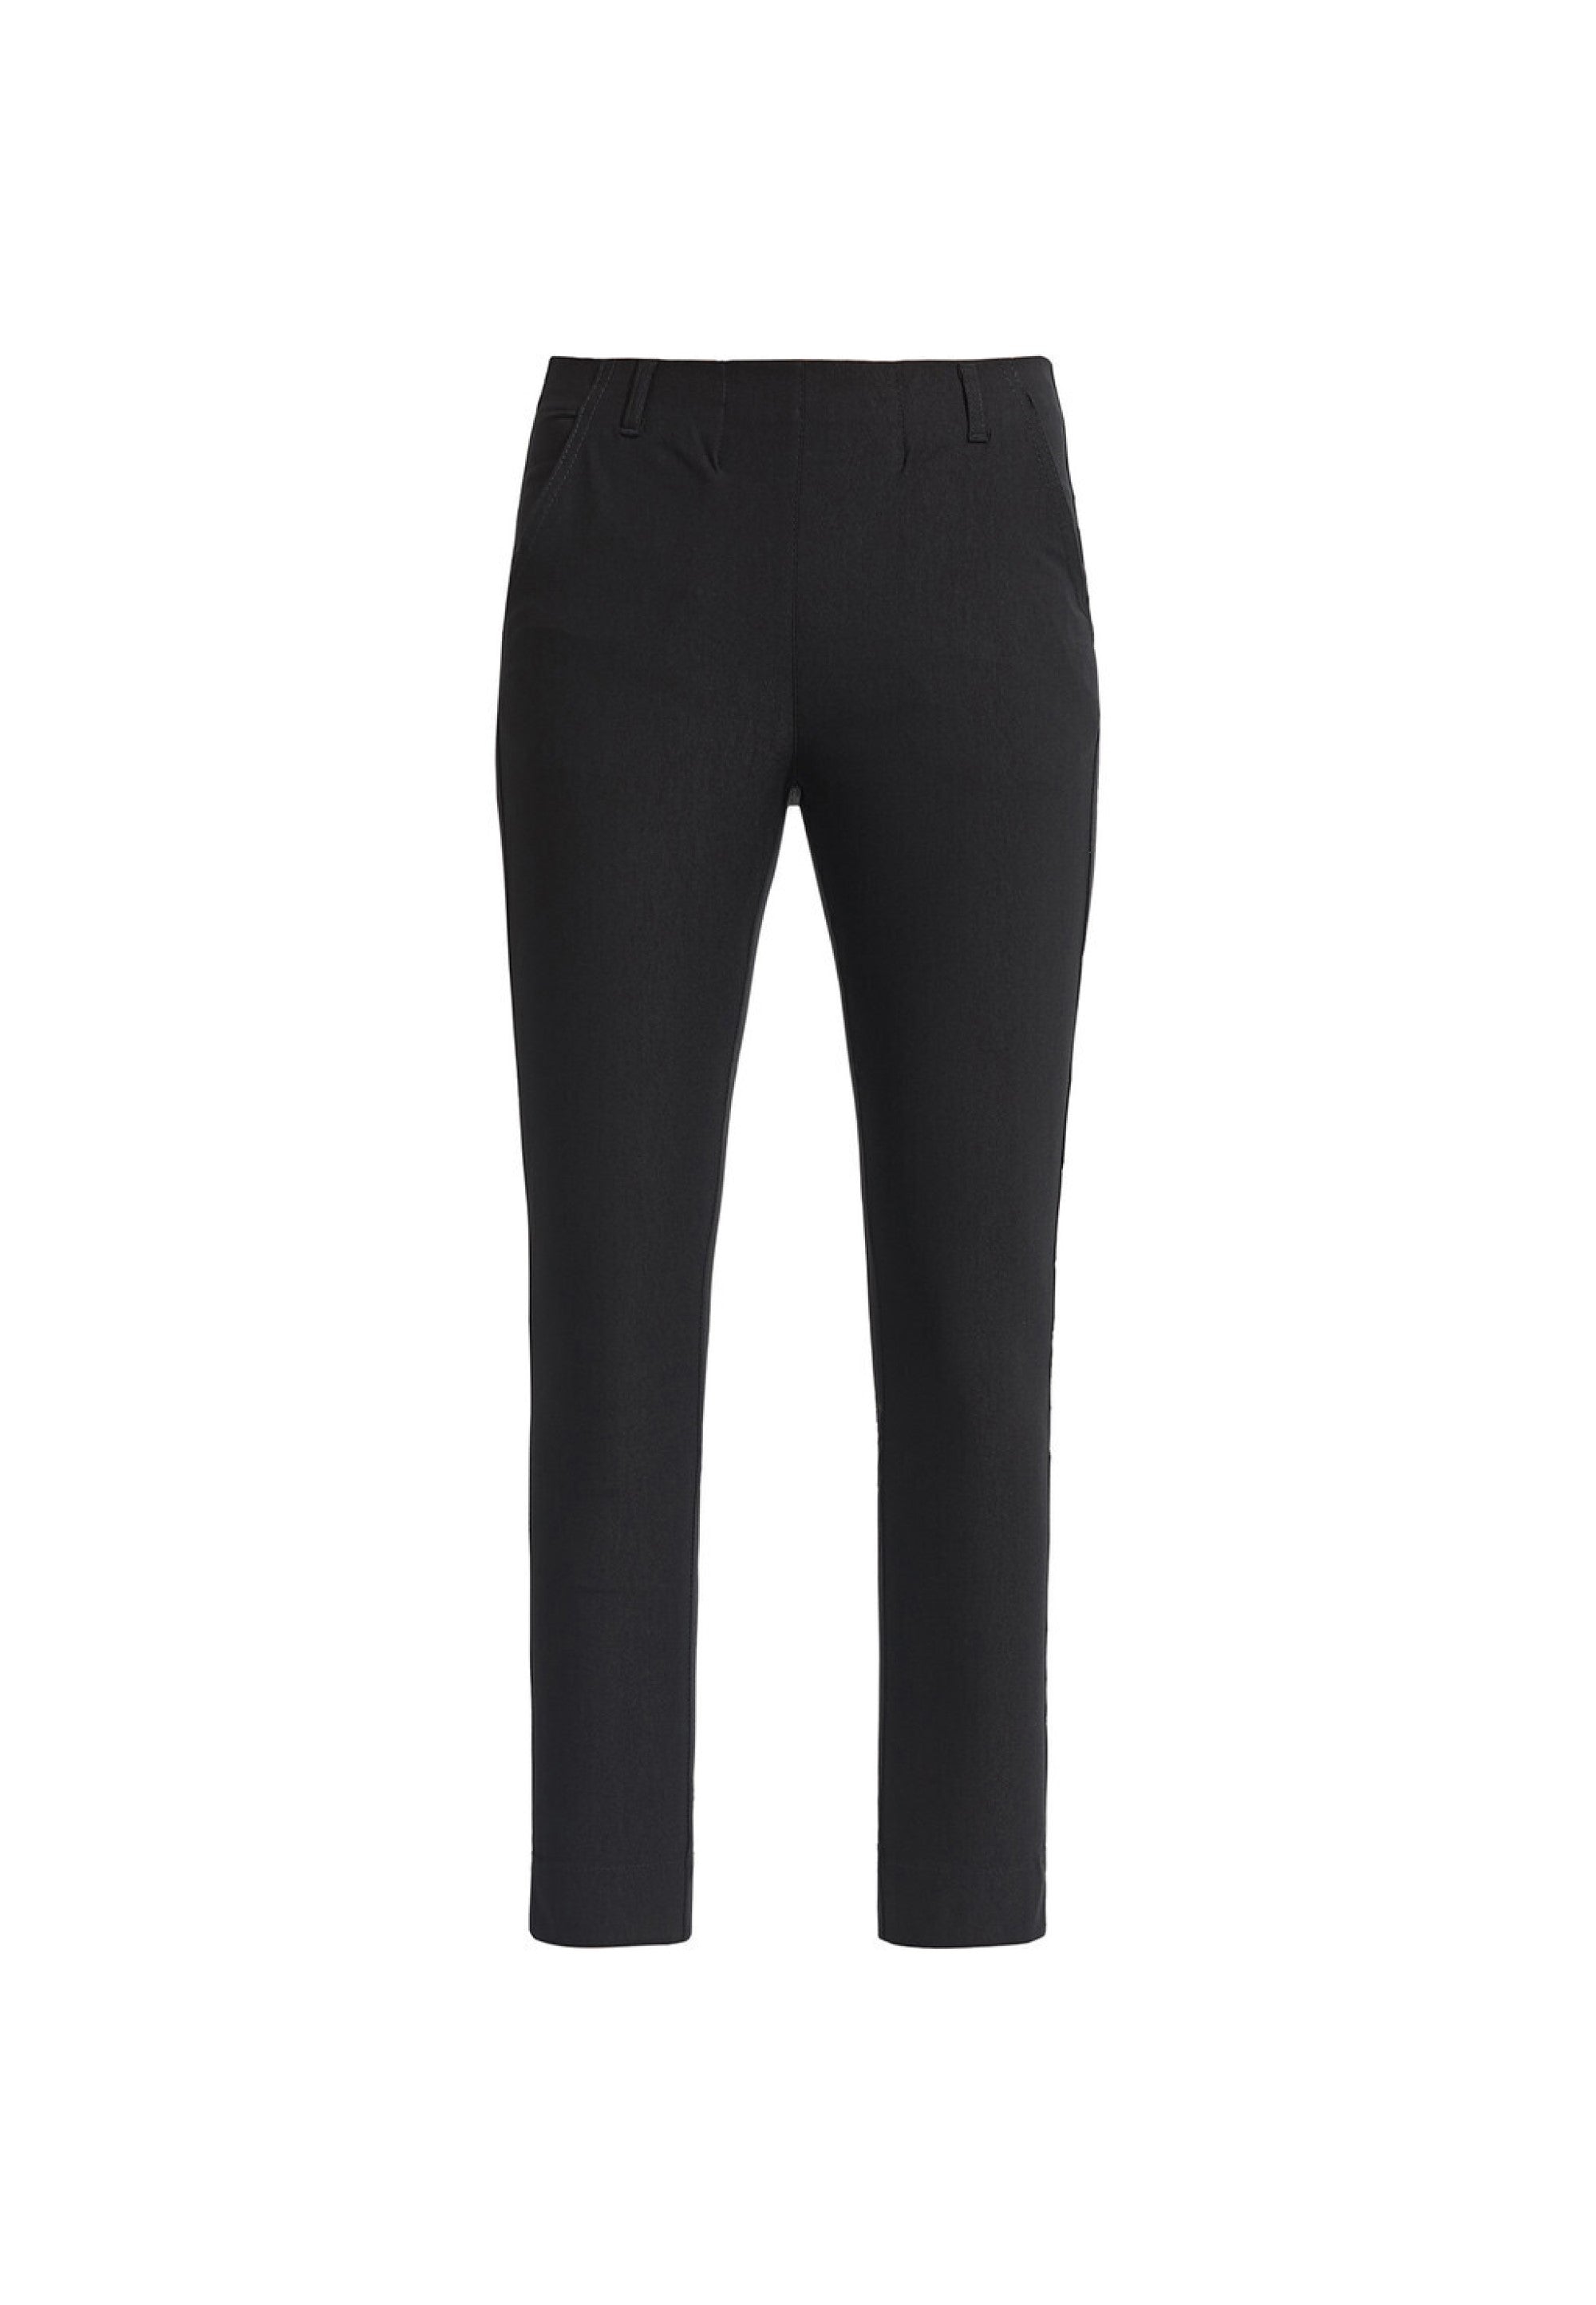 LAURIE Elizabeth Slim - Short Length Trousers SLIM 99000 Black